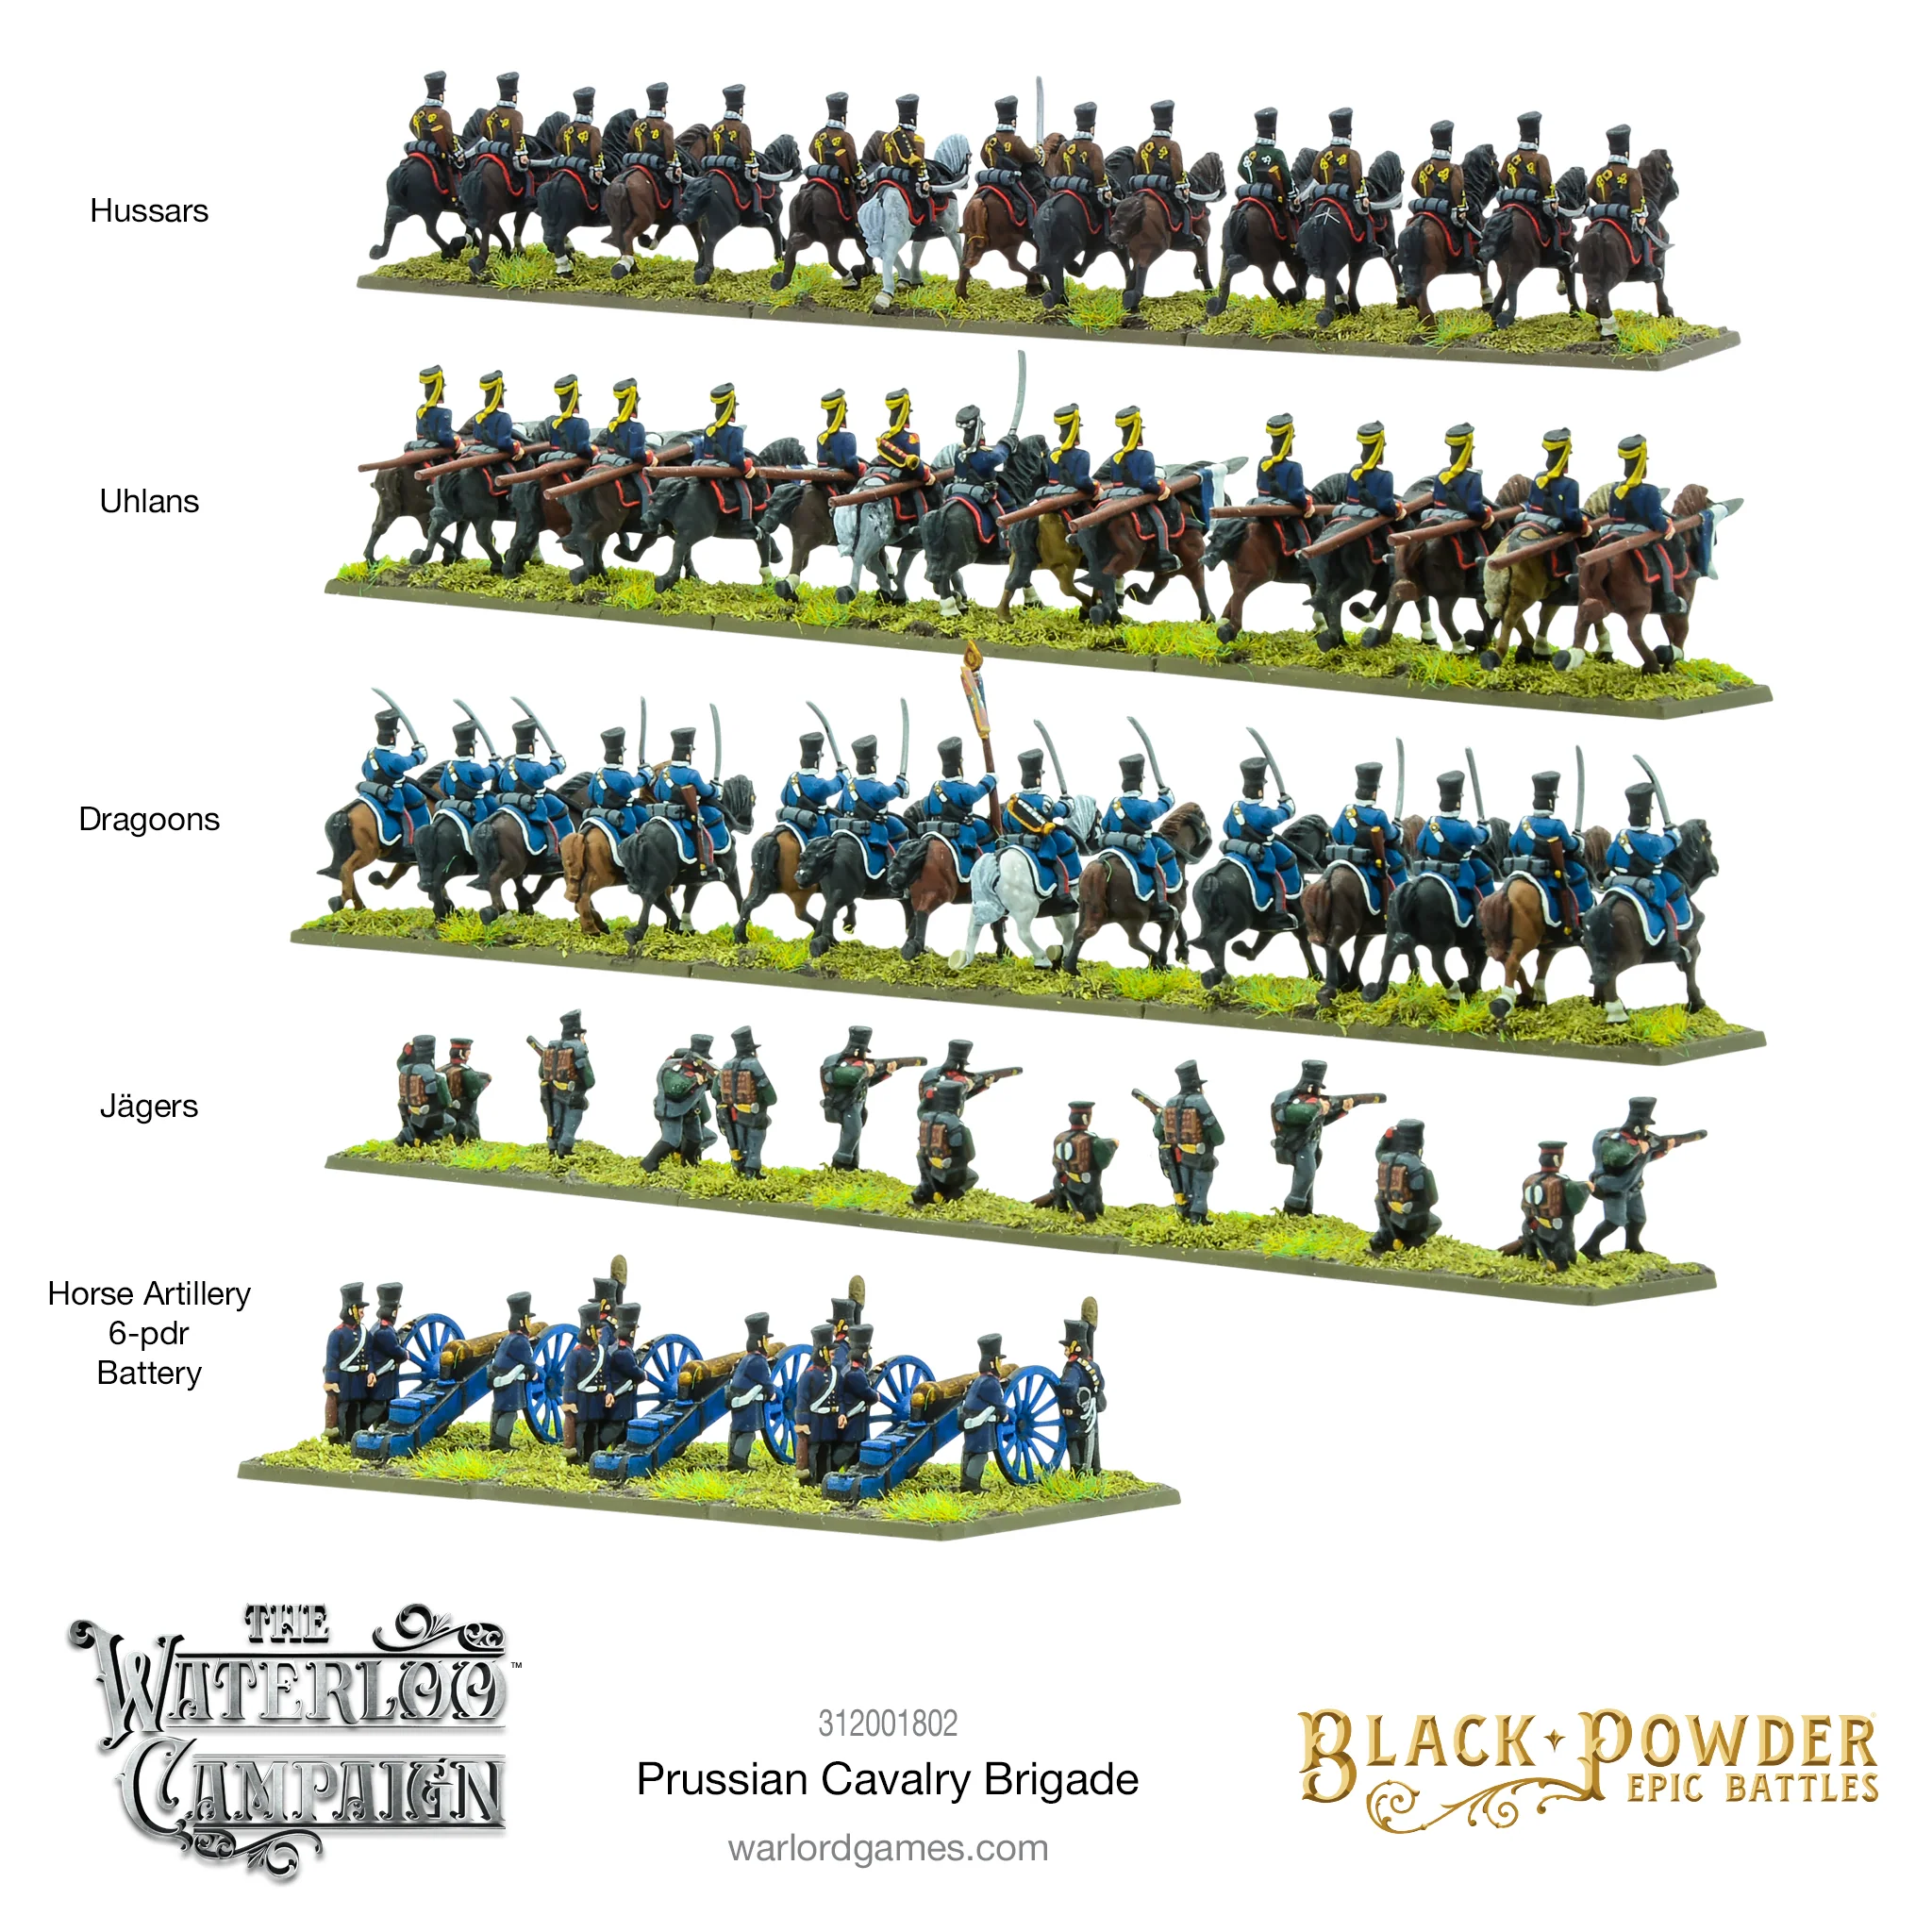 Black Powder Epic Battles - Waterloo: Prussian Cavalry Brigade-1711120619-QcdLW.webp